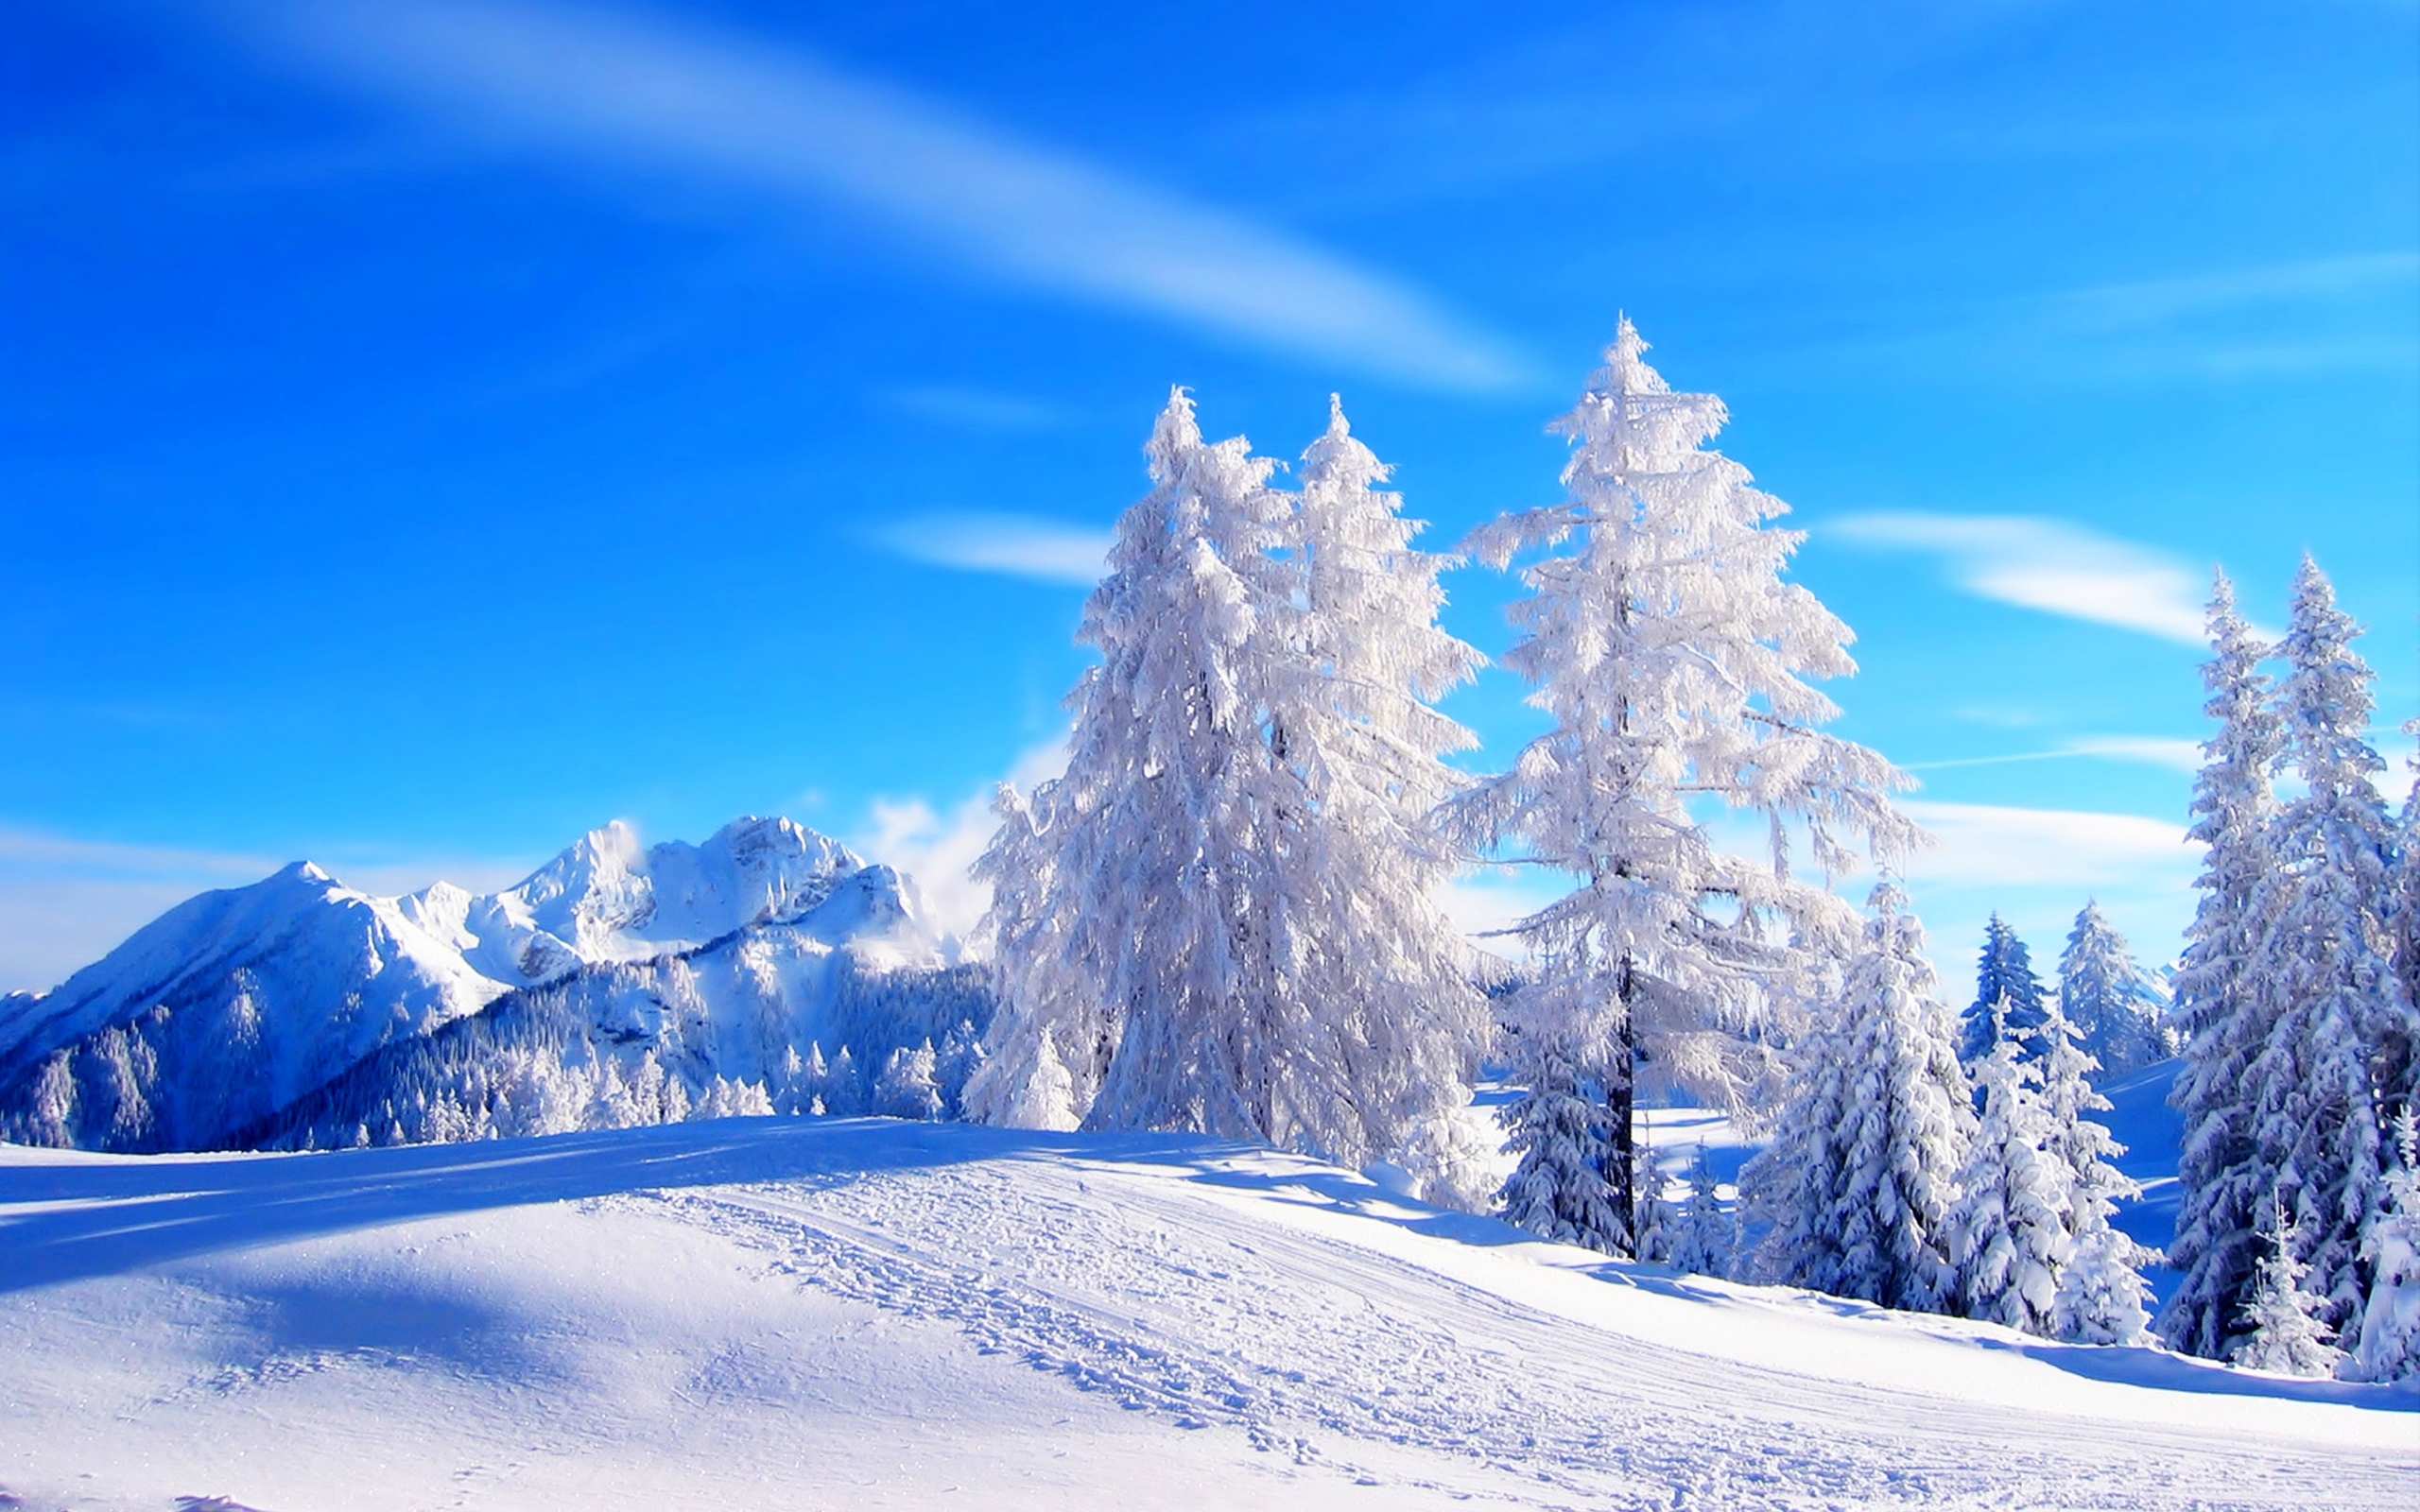 高清晰2015最美蓝白冬季雪景自然桌面壁纸下